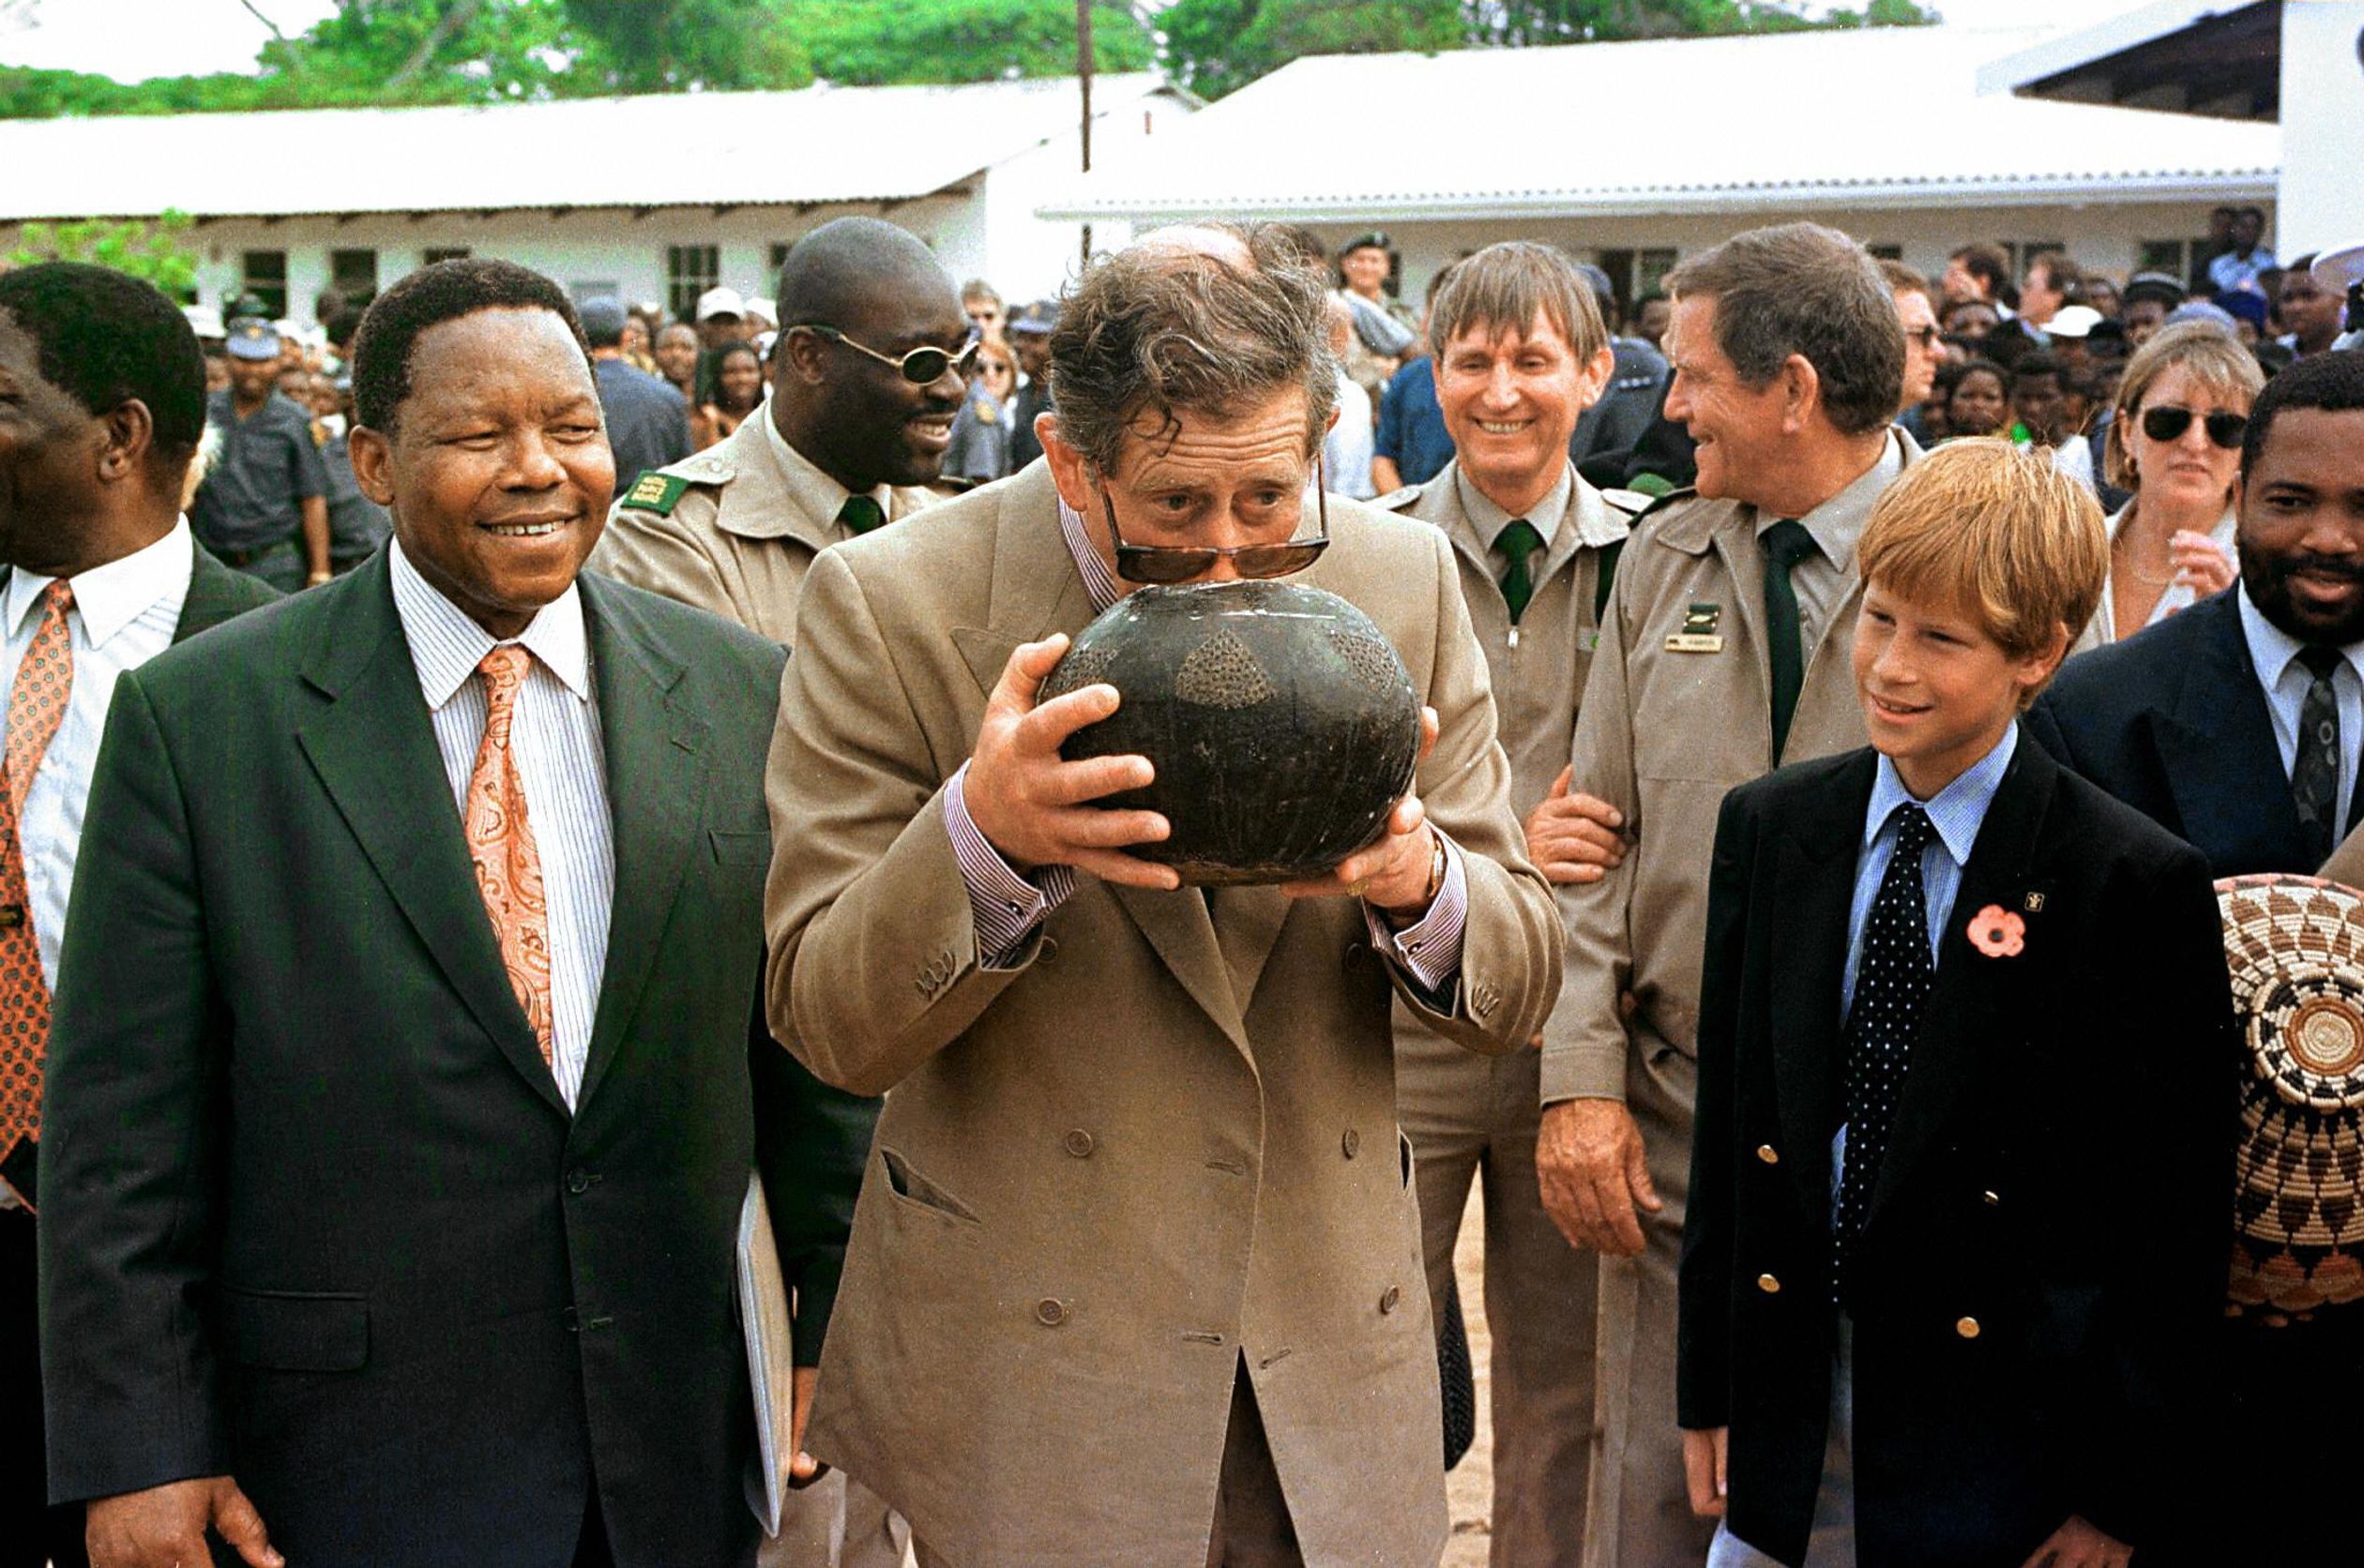 Prins Charles drinkt traditionele Zulu bier uit een calabash tijdens een bezoek aan Zuid-Afrika. Ook